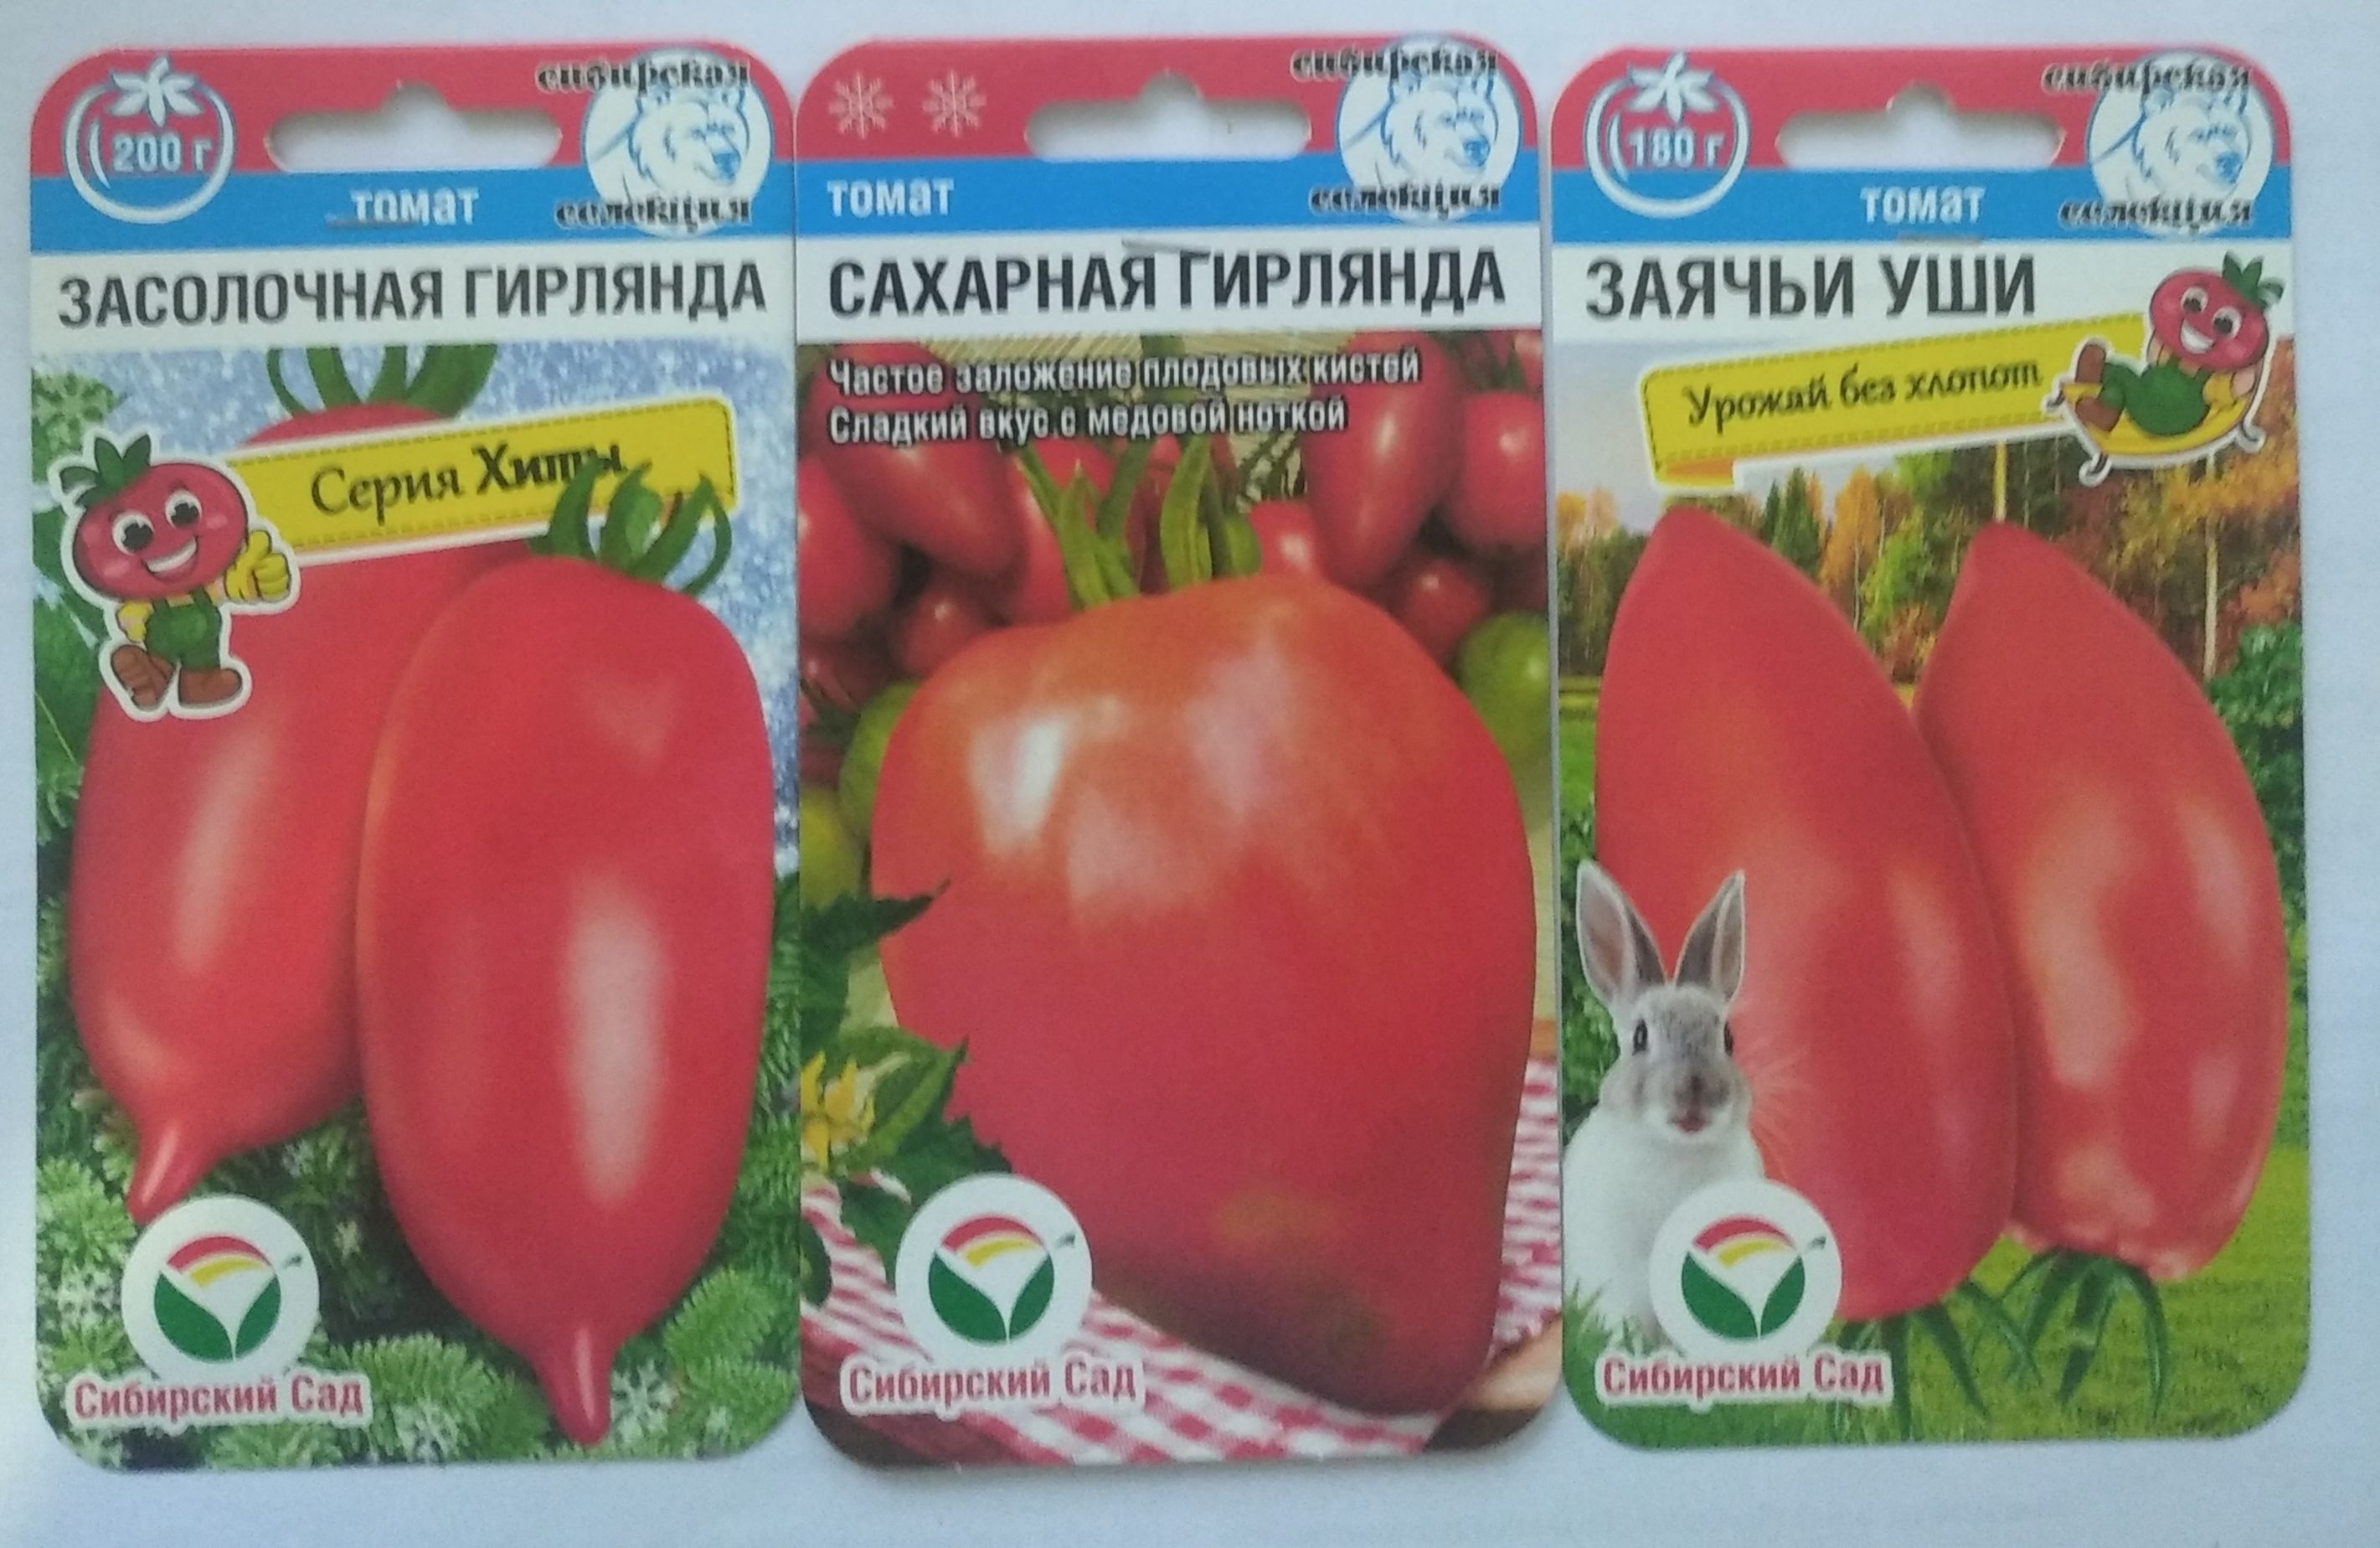 томаты сахарный бизон описание сорта фото отзывы